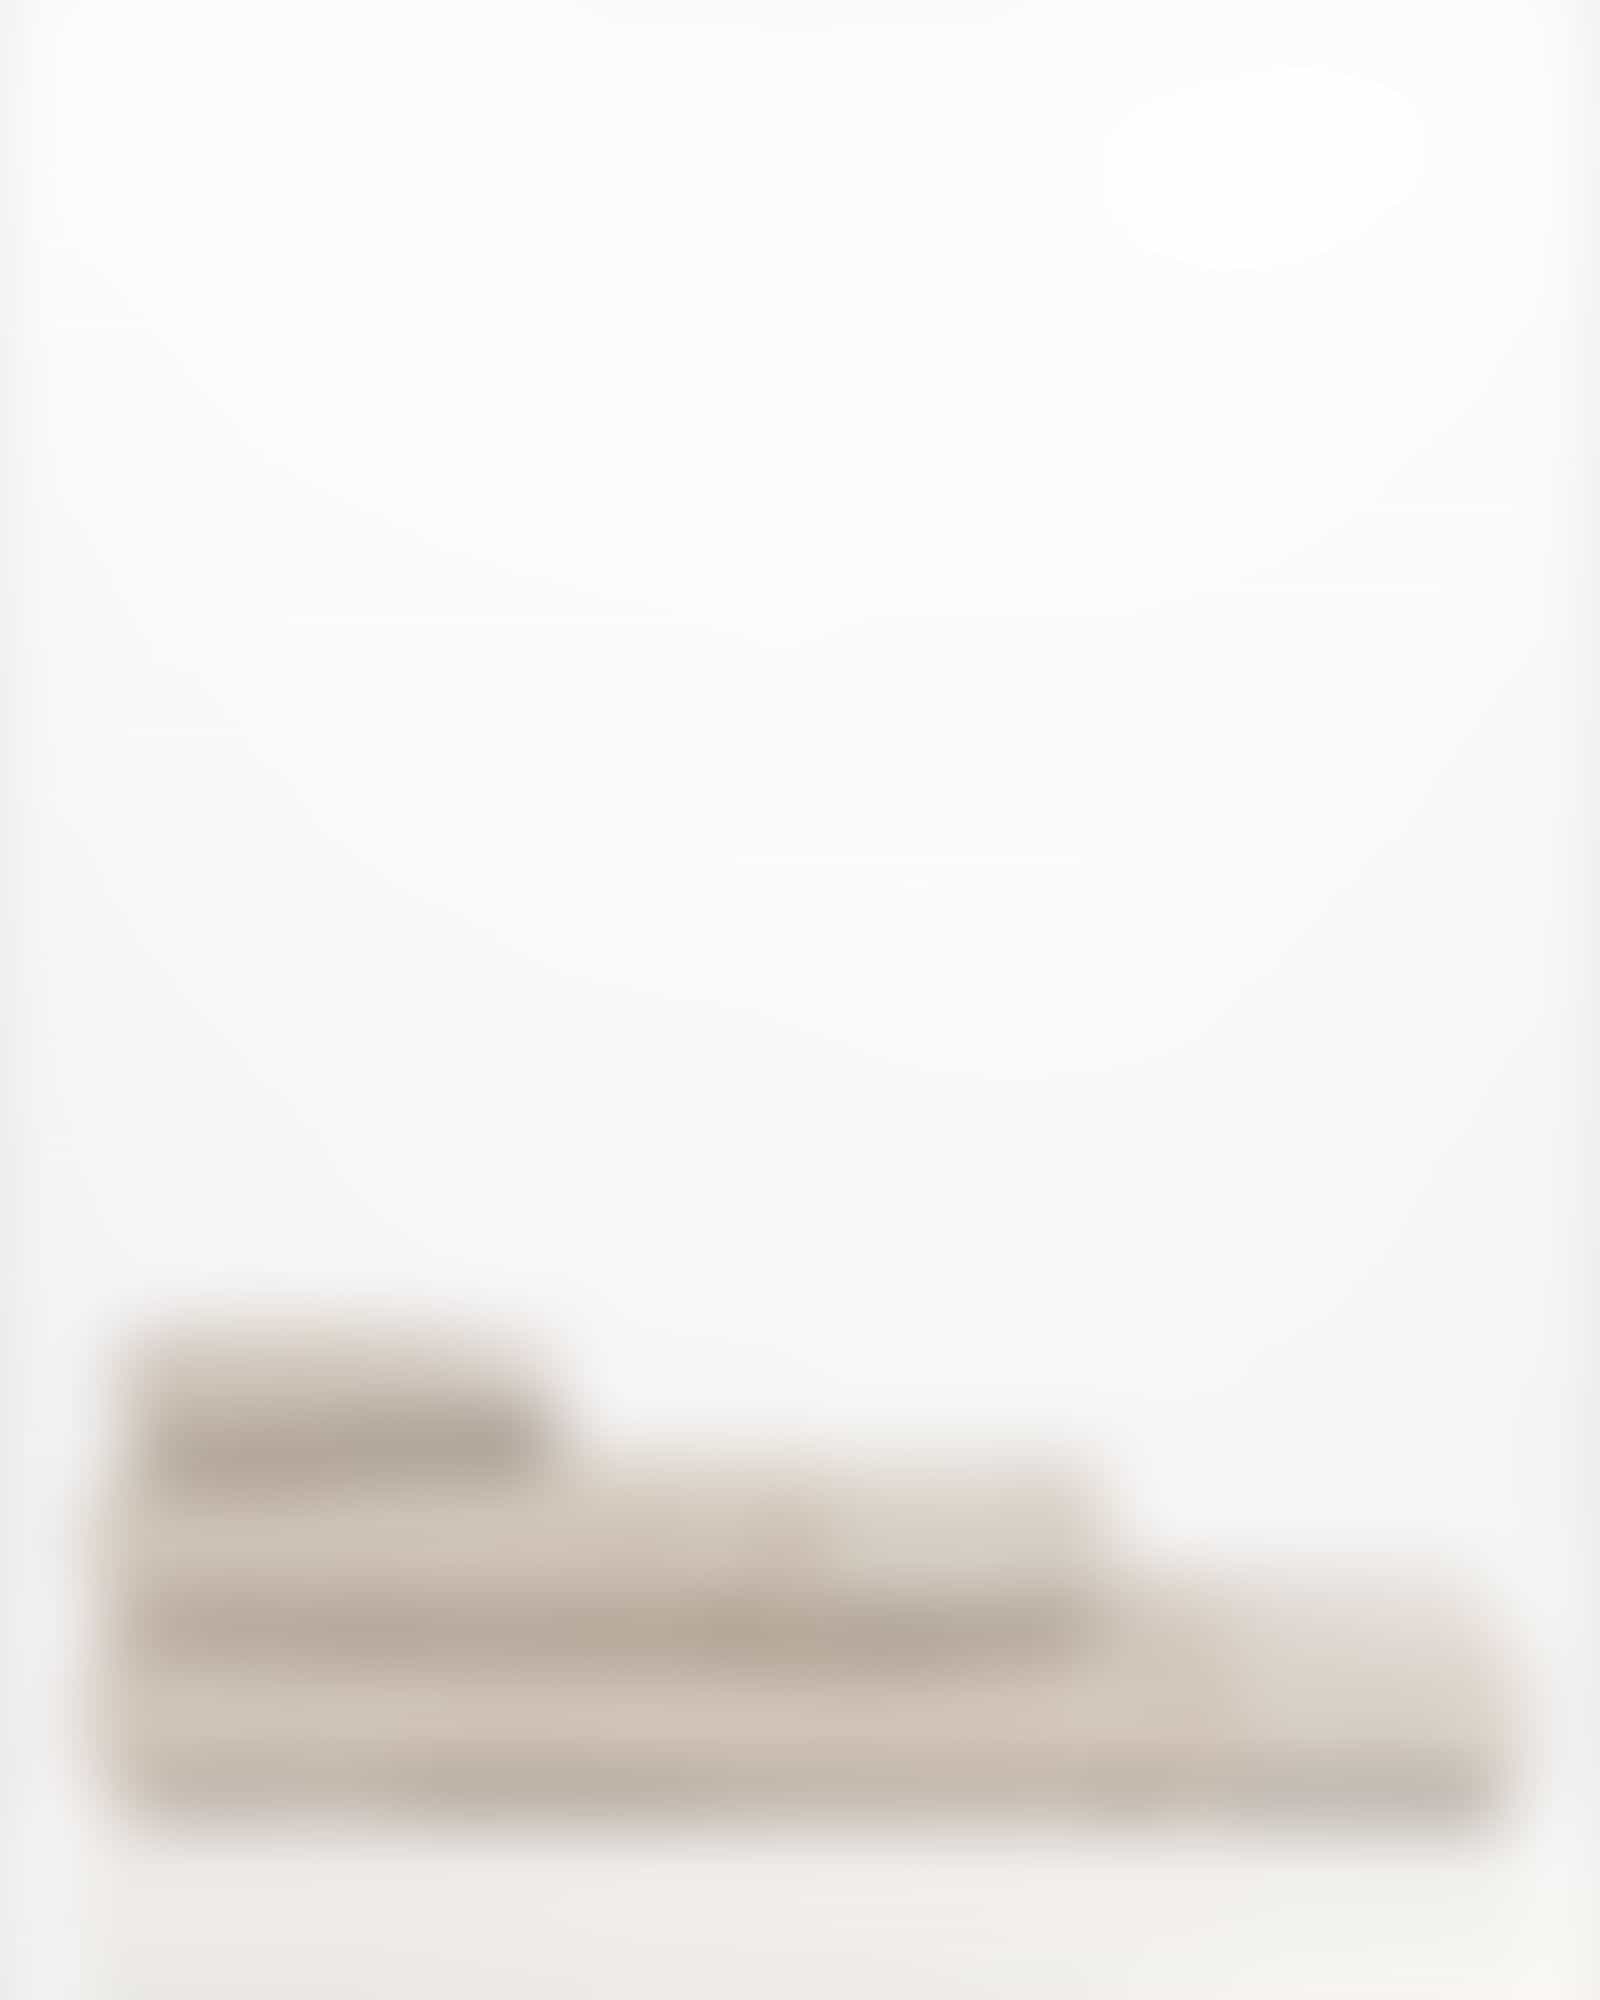 Möve Handtücher Wellbeing Perlstruktur - Farbe: cashmere - 713 - Saunatuch 80x200 cm Detailbild 3